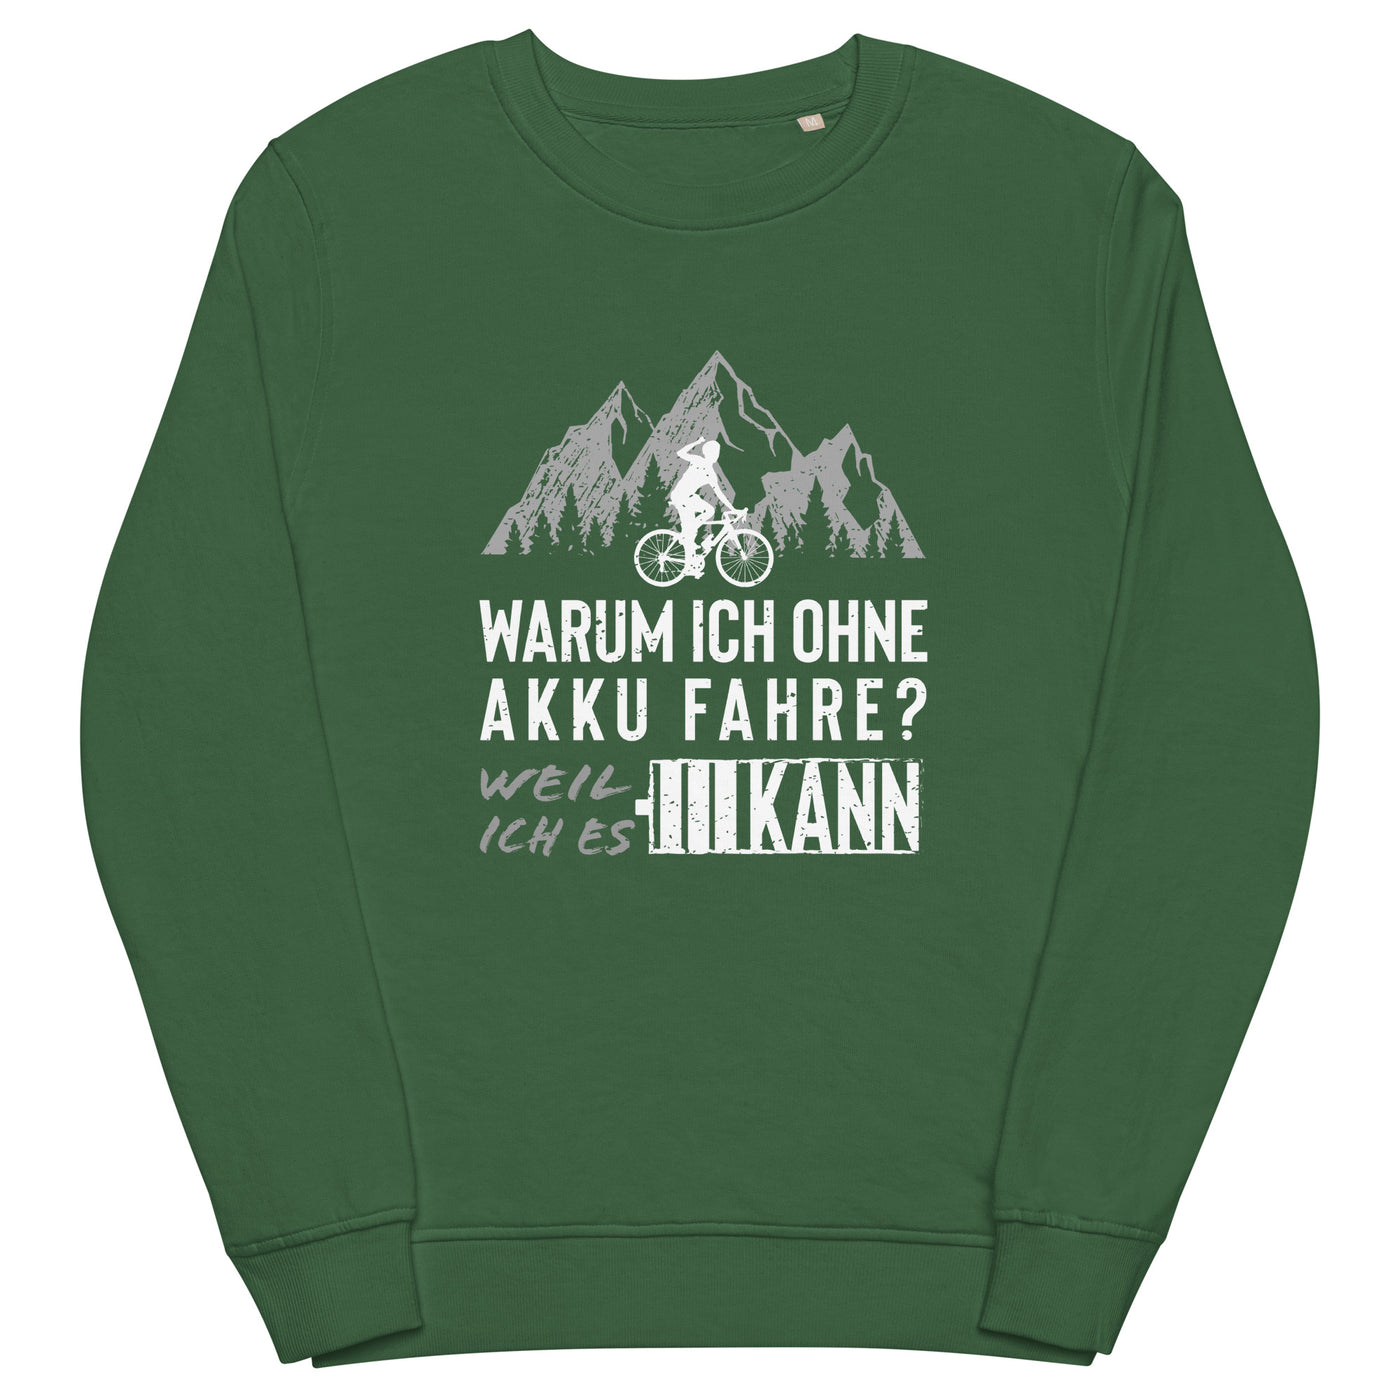 Warum ich ohne Akku fahre - Unisex Premium Organic Sweatshirt fahrrad mountainbike Bottle Green